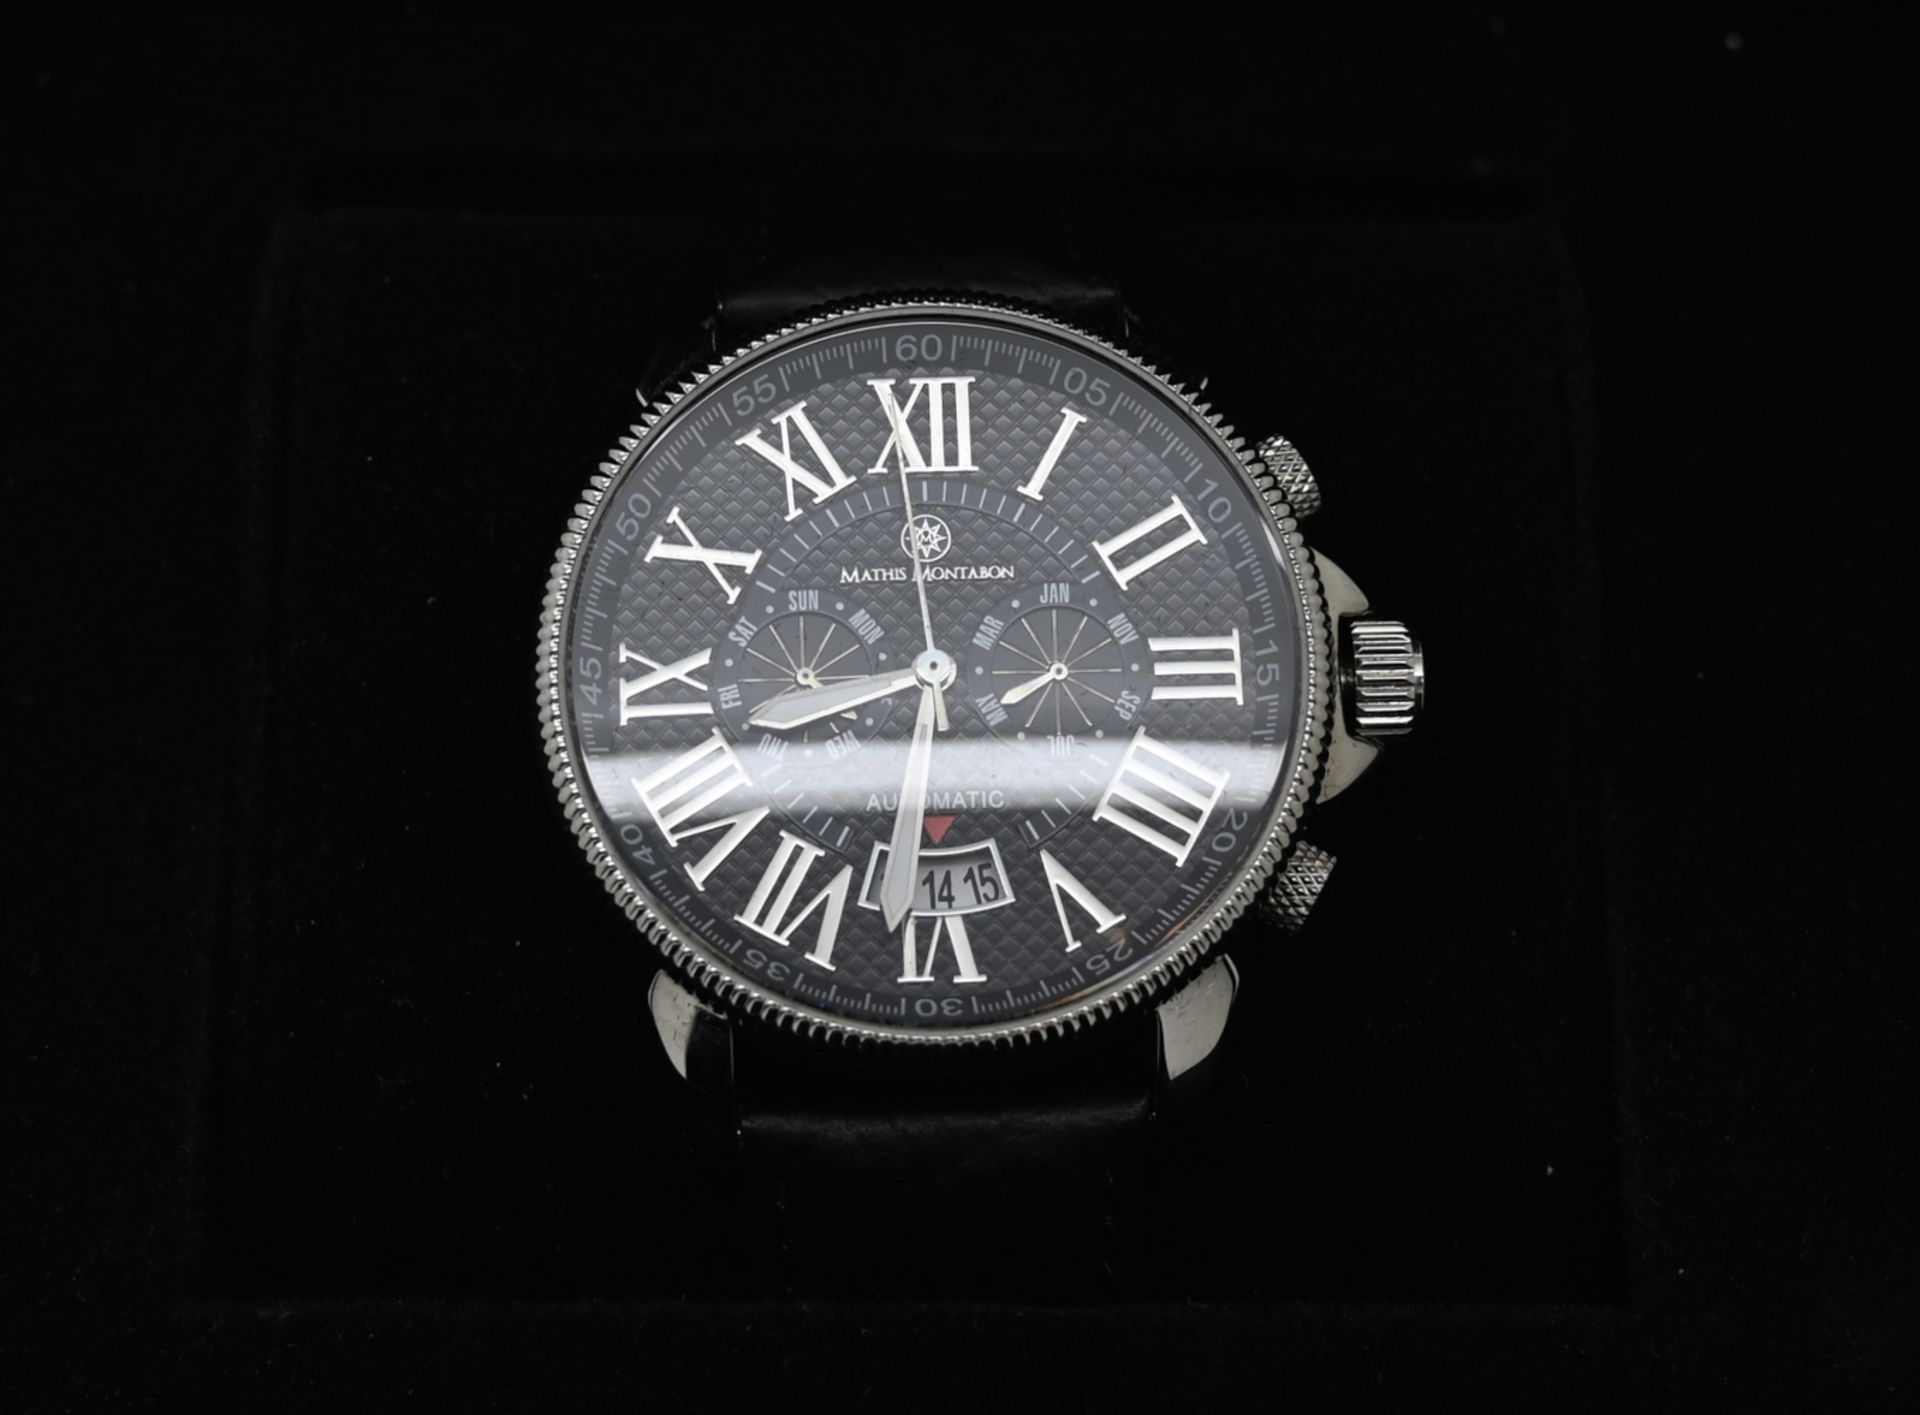 1 Armbanduhr MATHIS MONTABON, Edelstahl, Automatik, mit Lederband, in Originalschatulle, mit Zertifi - Bild 2 aus 2